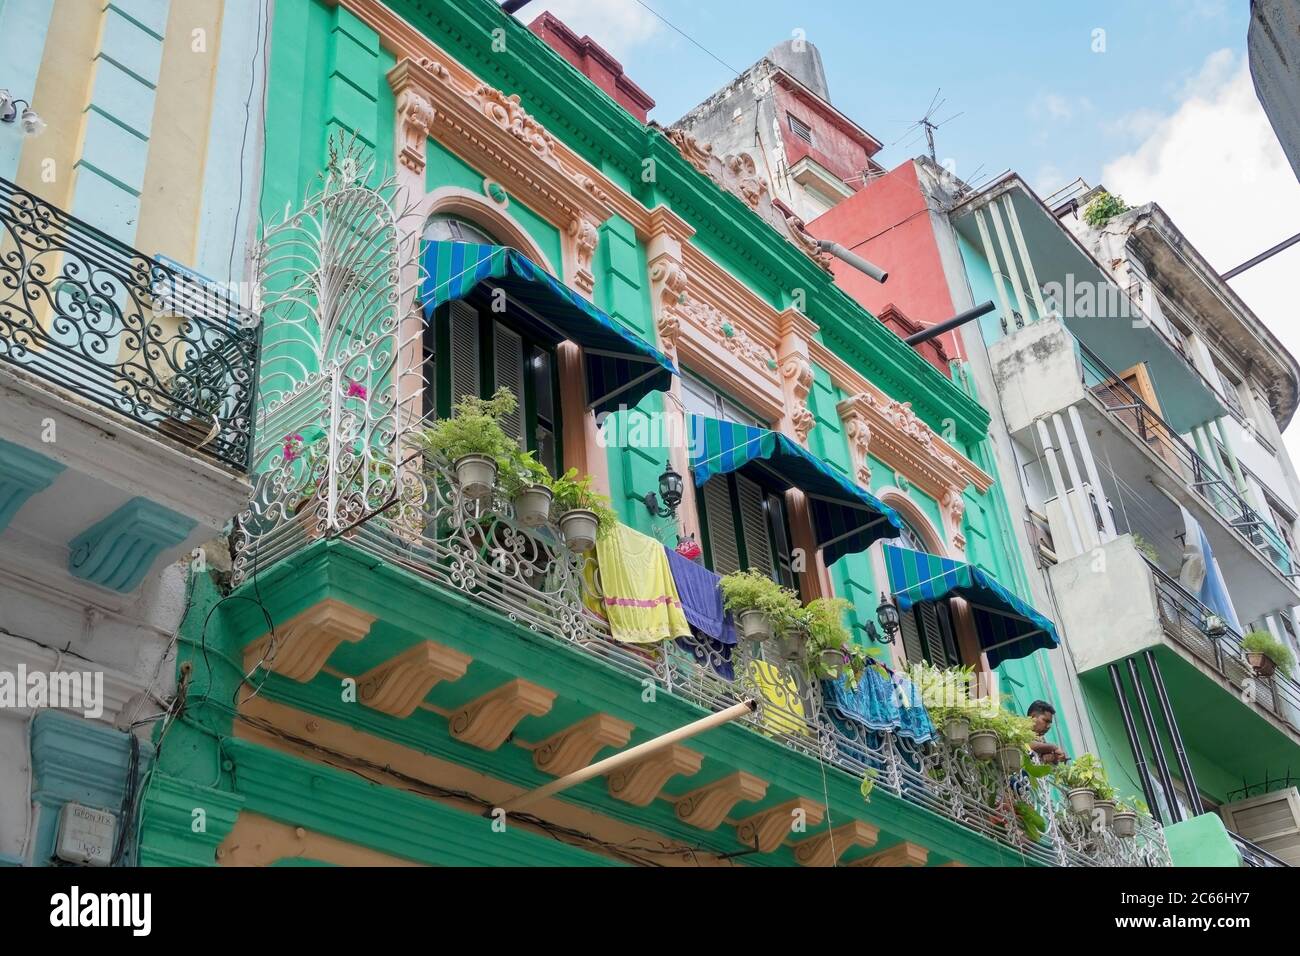 Cuba, l'Avana, quartiere dell'artista Barrio del Arte, facciata colorata con stucco a contrasto Foto Stock